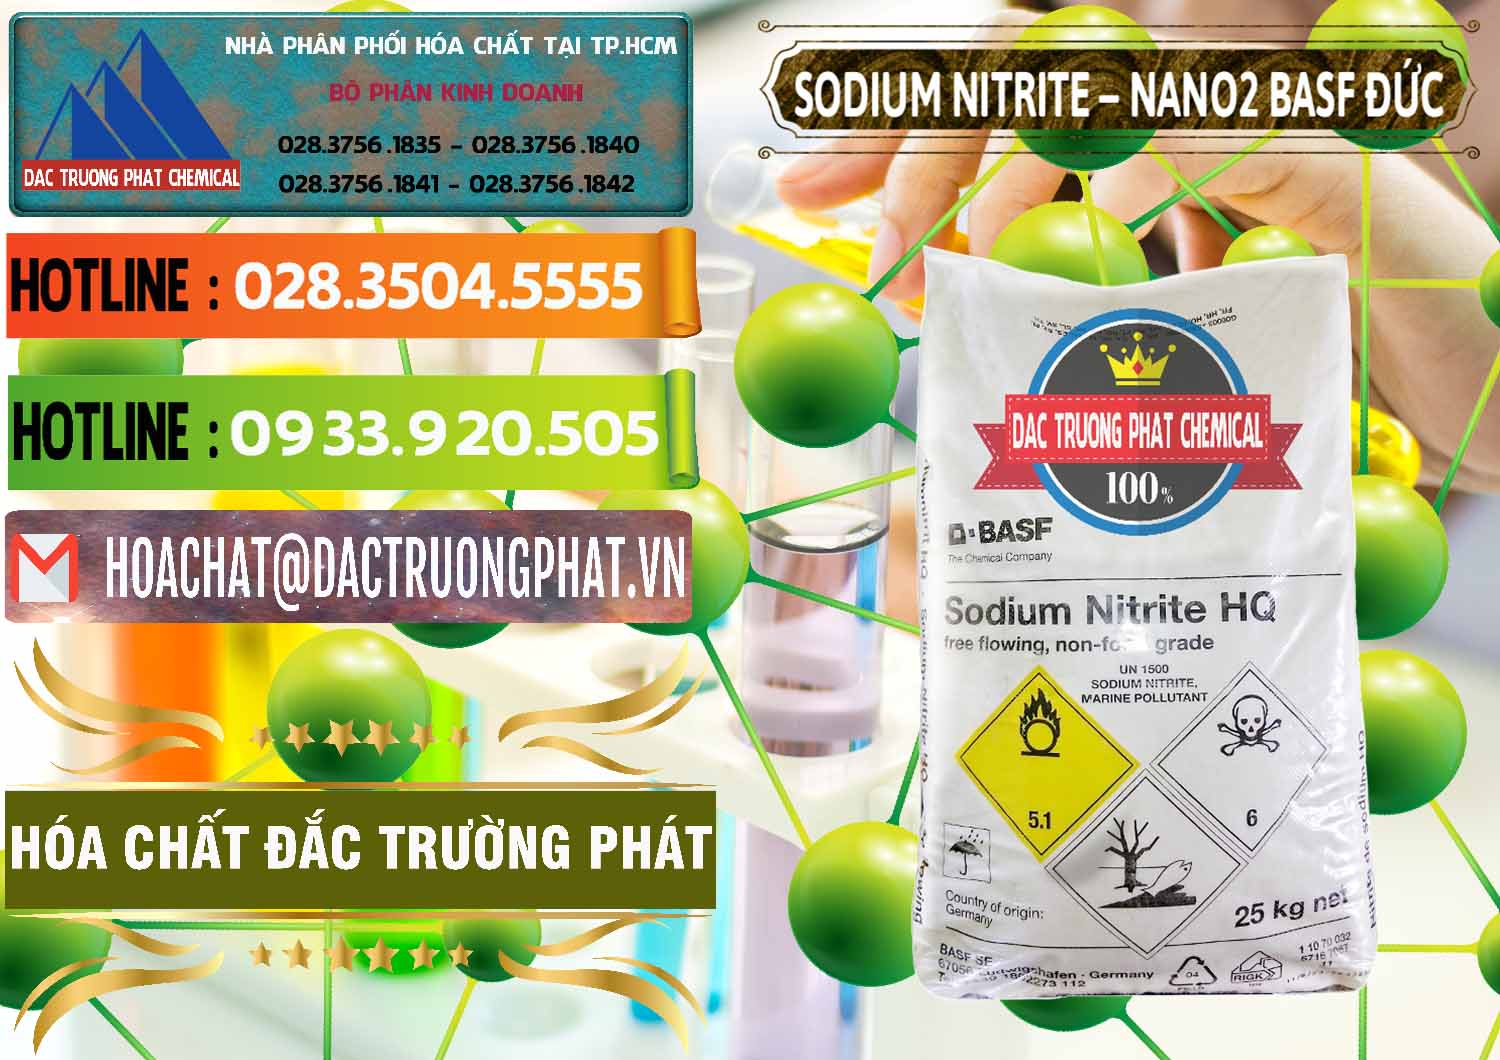 Công ty chuyên bán và cung ứng Sodium Nitrite - NANO2 Đức BASF Germany - 0148 - Cty phân phối và cung cấp hóa chất tại TP.HCM - cungcaphoachat.com.vn